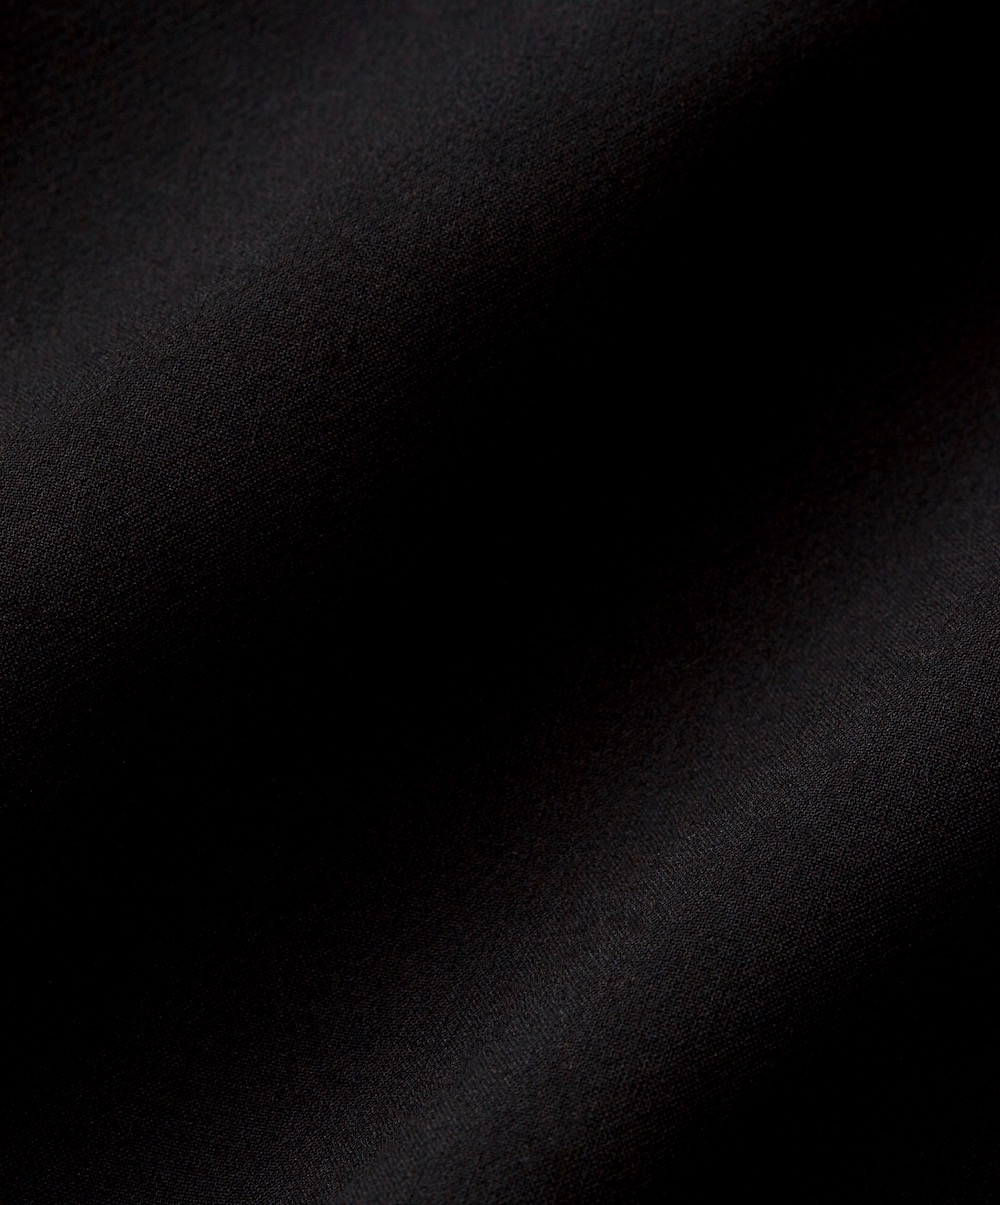 【ENFOLD】ブラックノーカラーコート | ワンタイムレンタル | ファッションレンタル【EDIST. CLOSET】